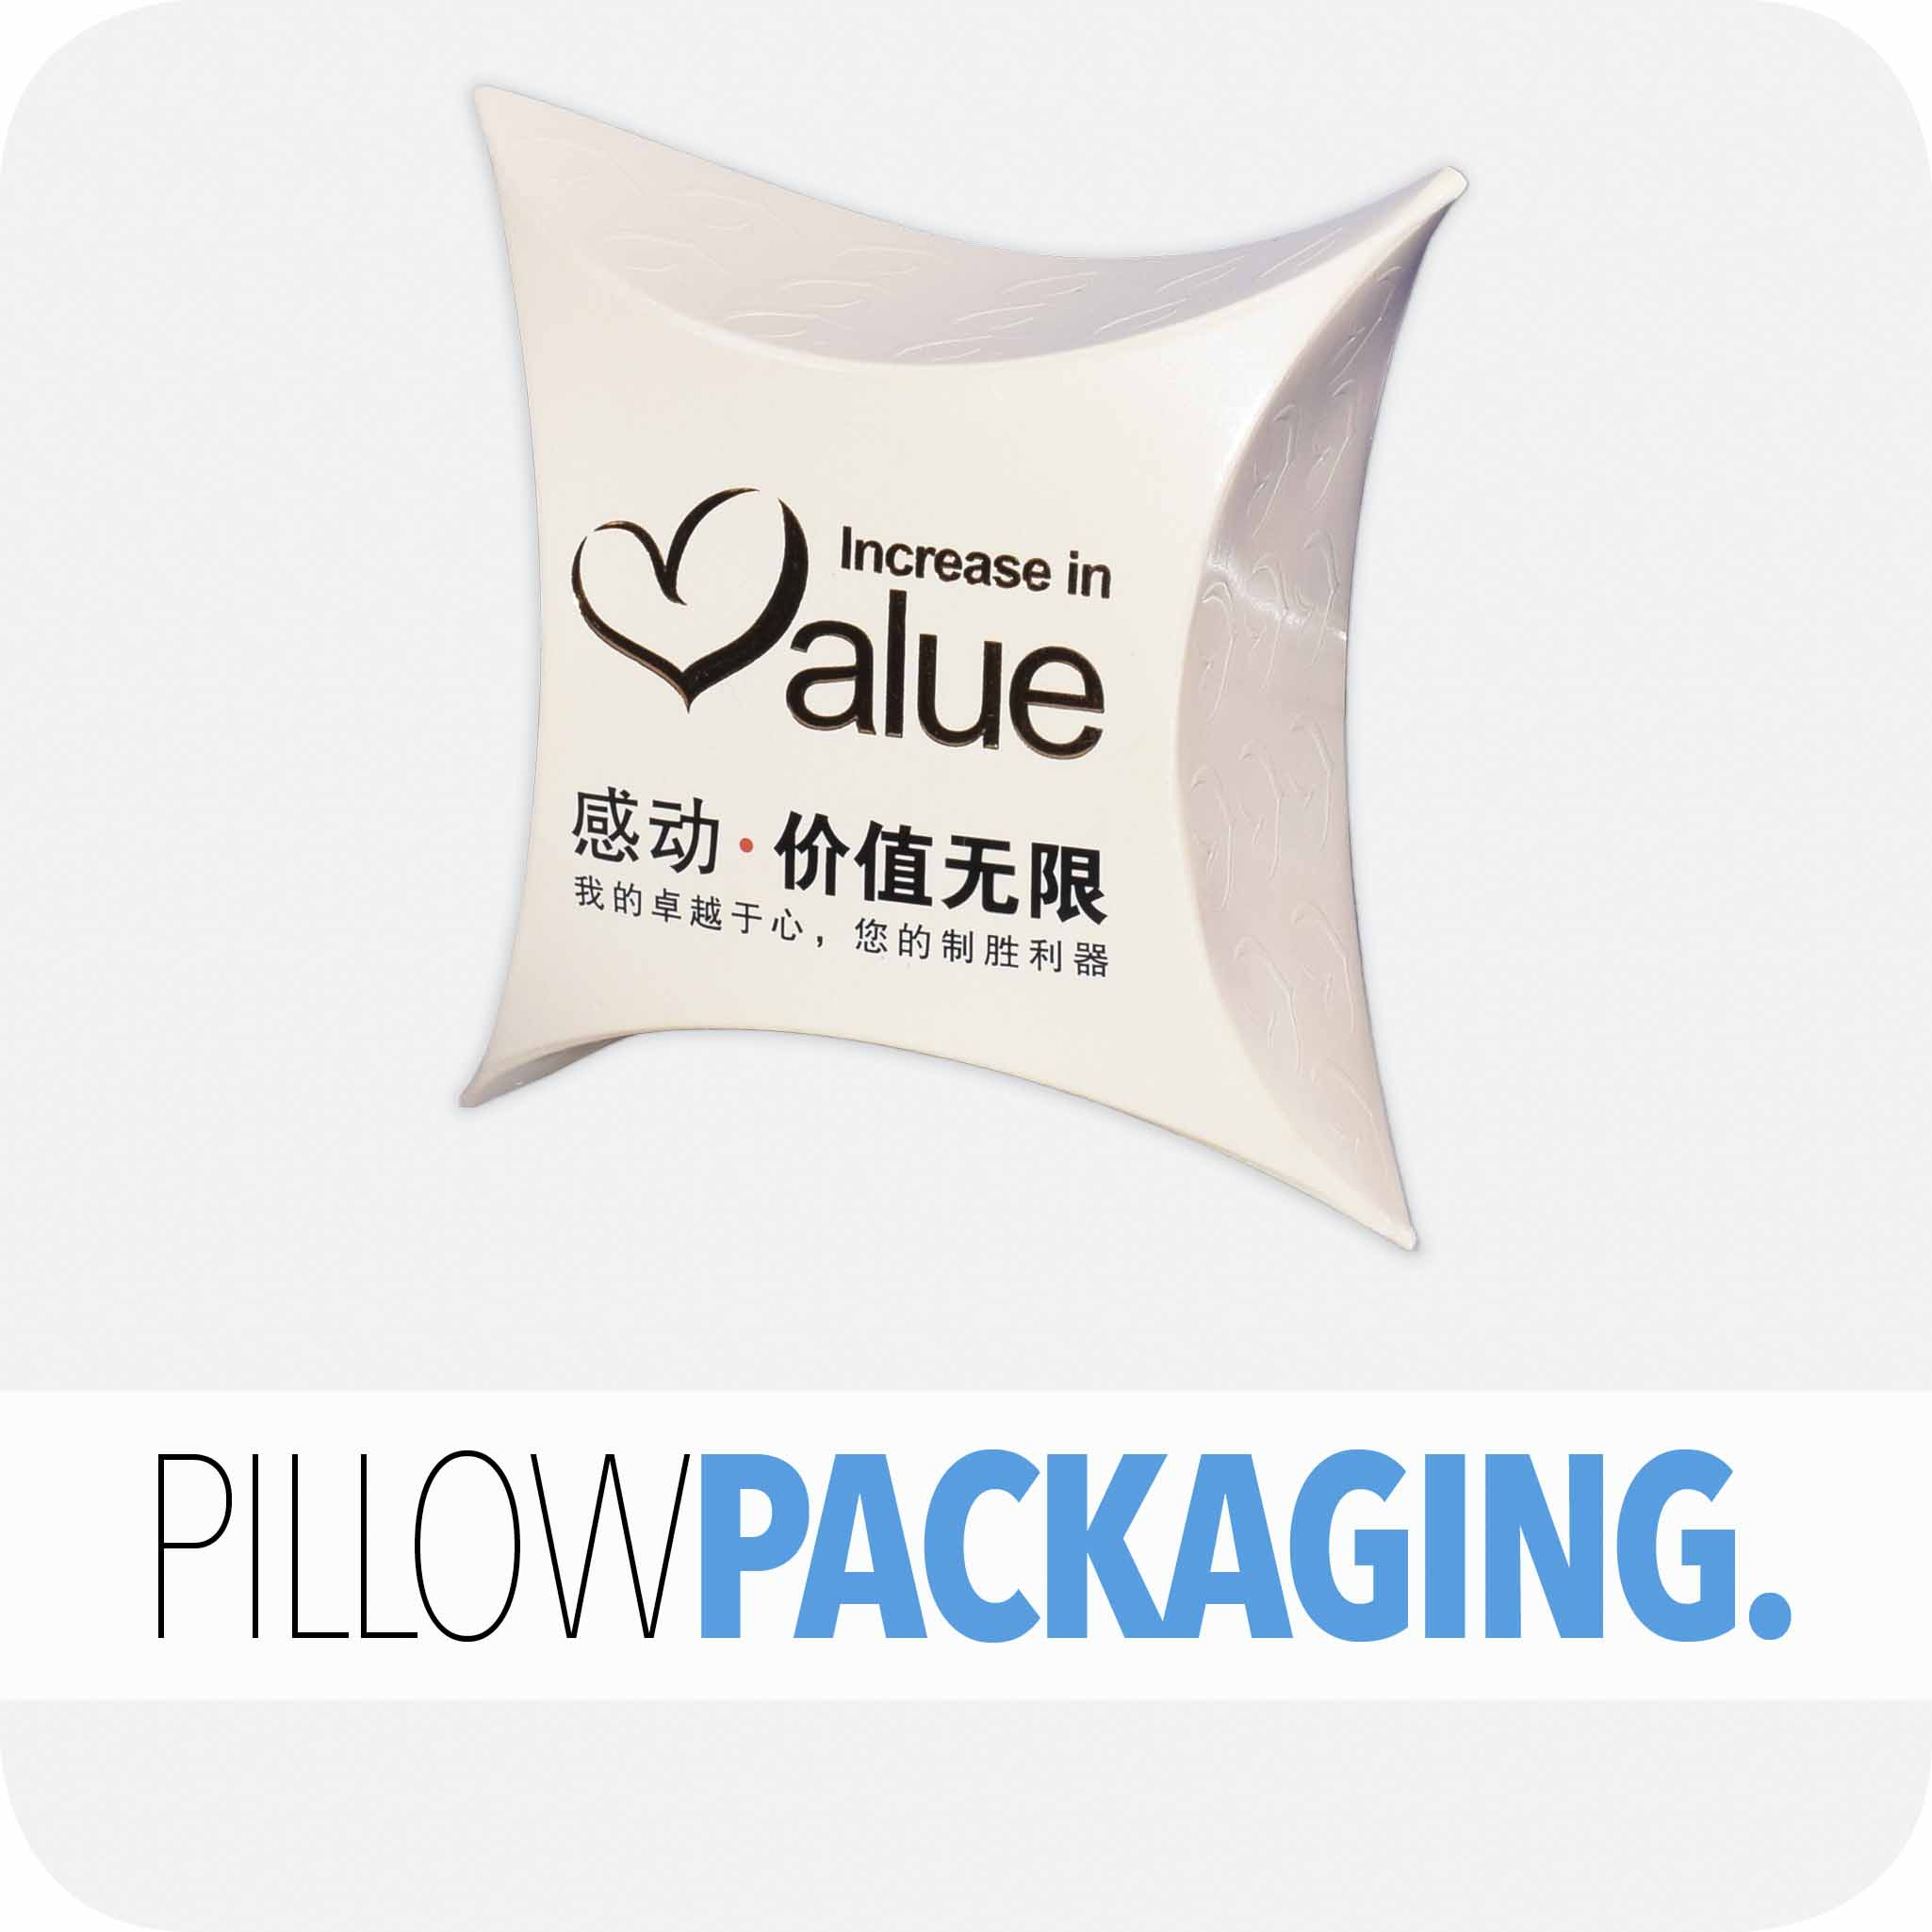 Pillow packaging